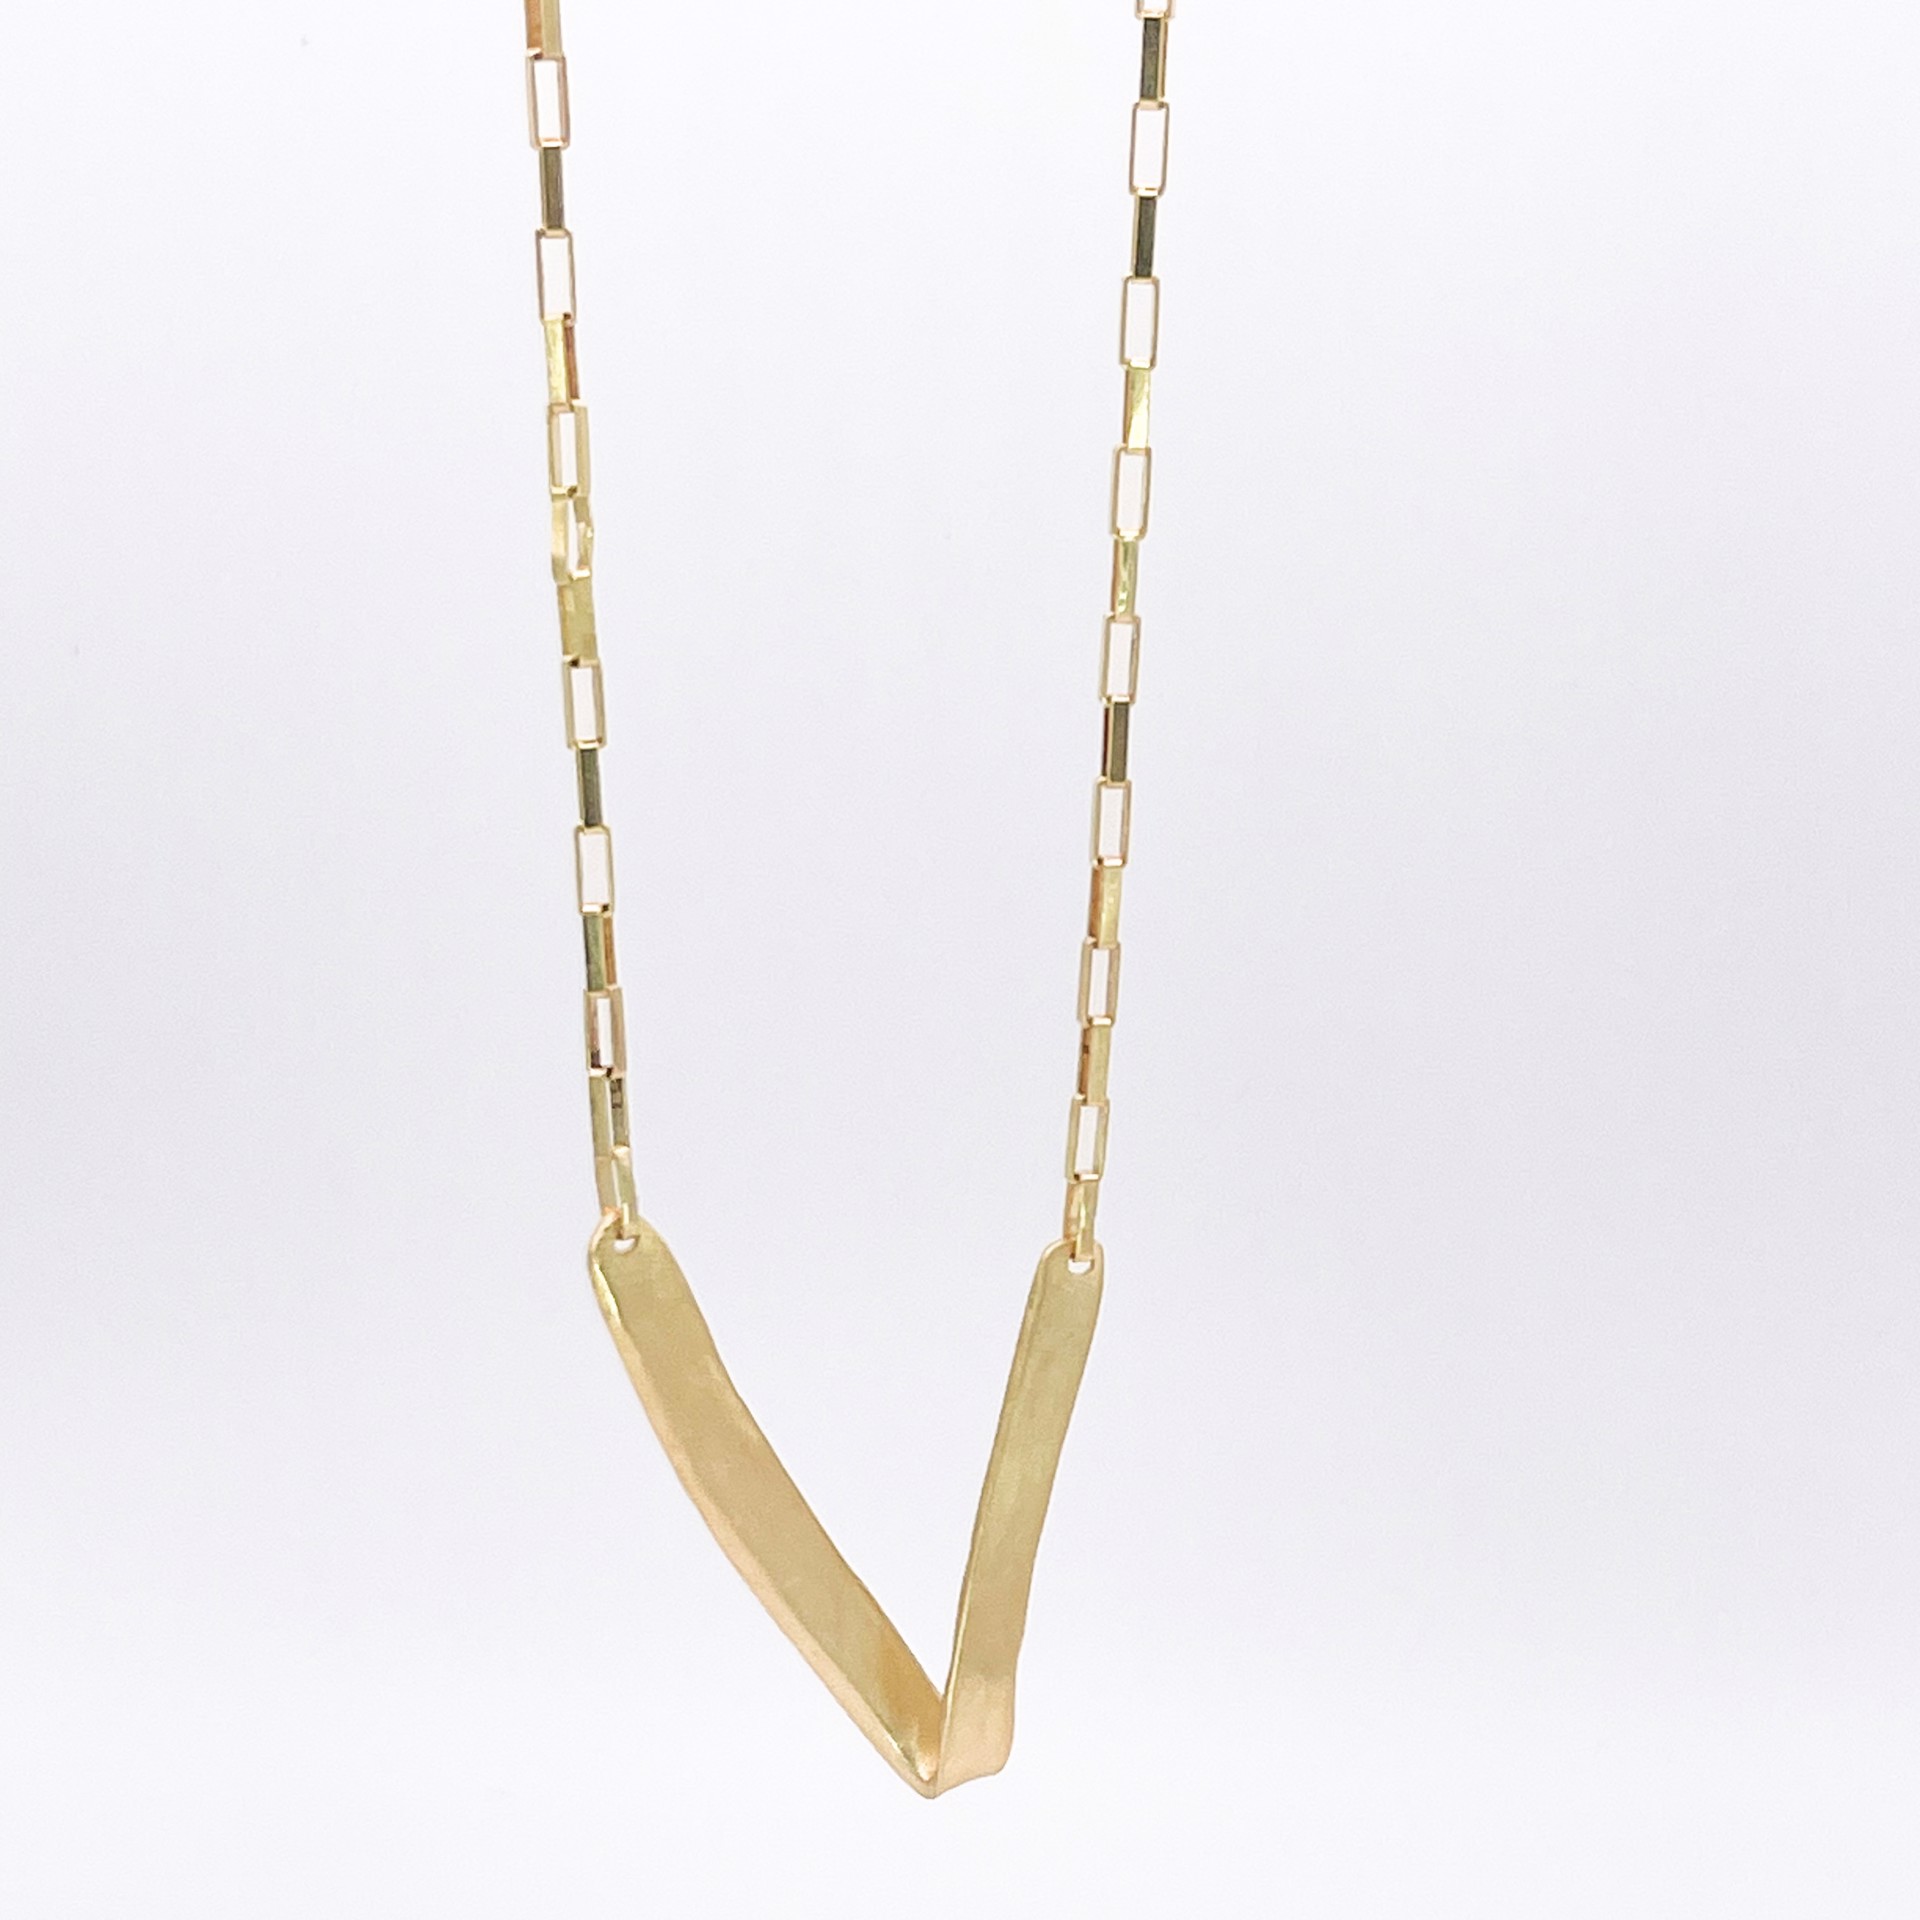 LHN07- "V" Pendant on chain links 18k gold by Leandra Hill